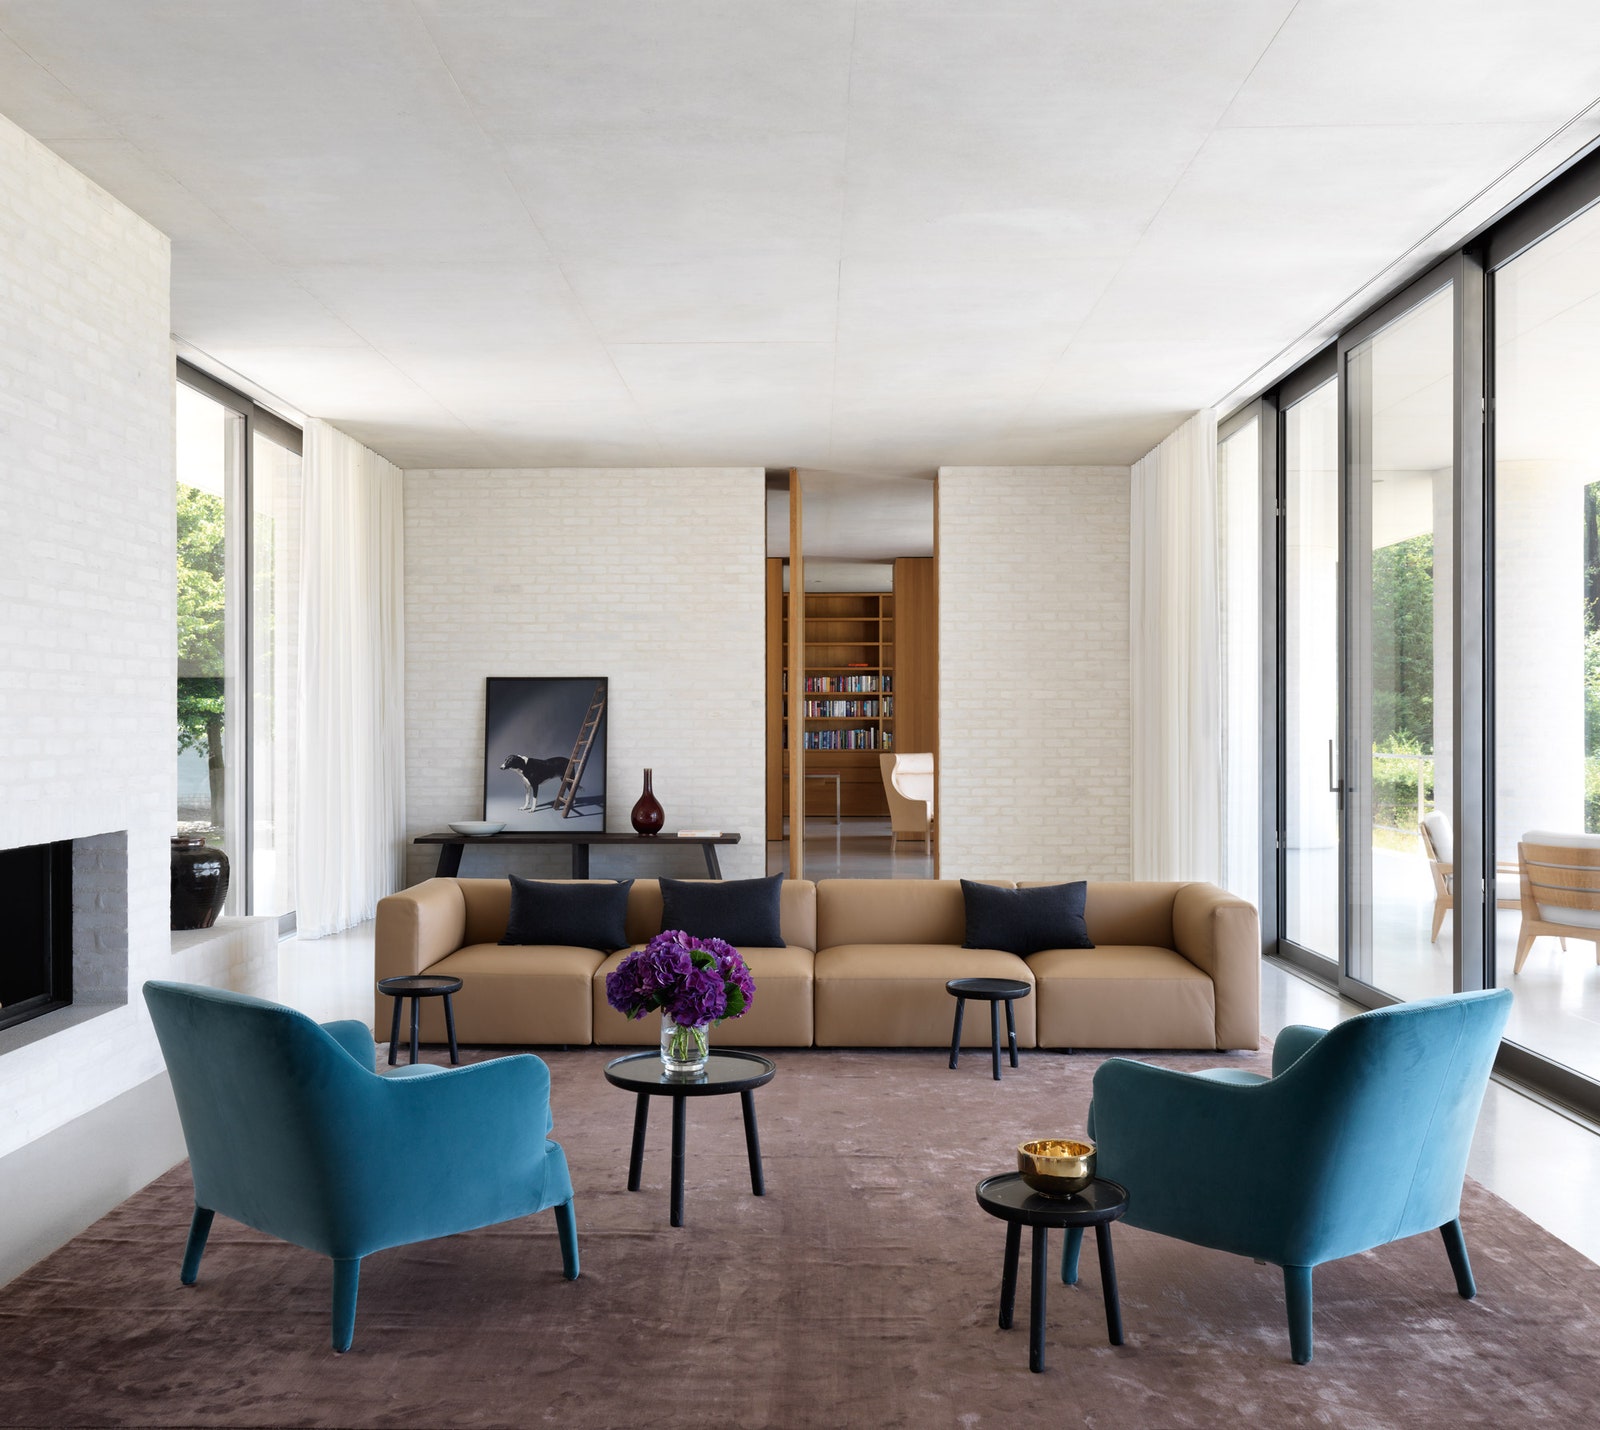 В гостиной диван Living Landscape 730 дизайн студии EOOS для Walter Knoll кресла Febo по дизайну Антонио Читтерио для...